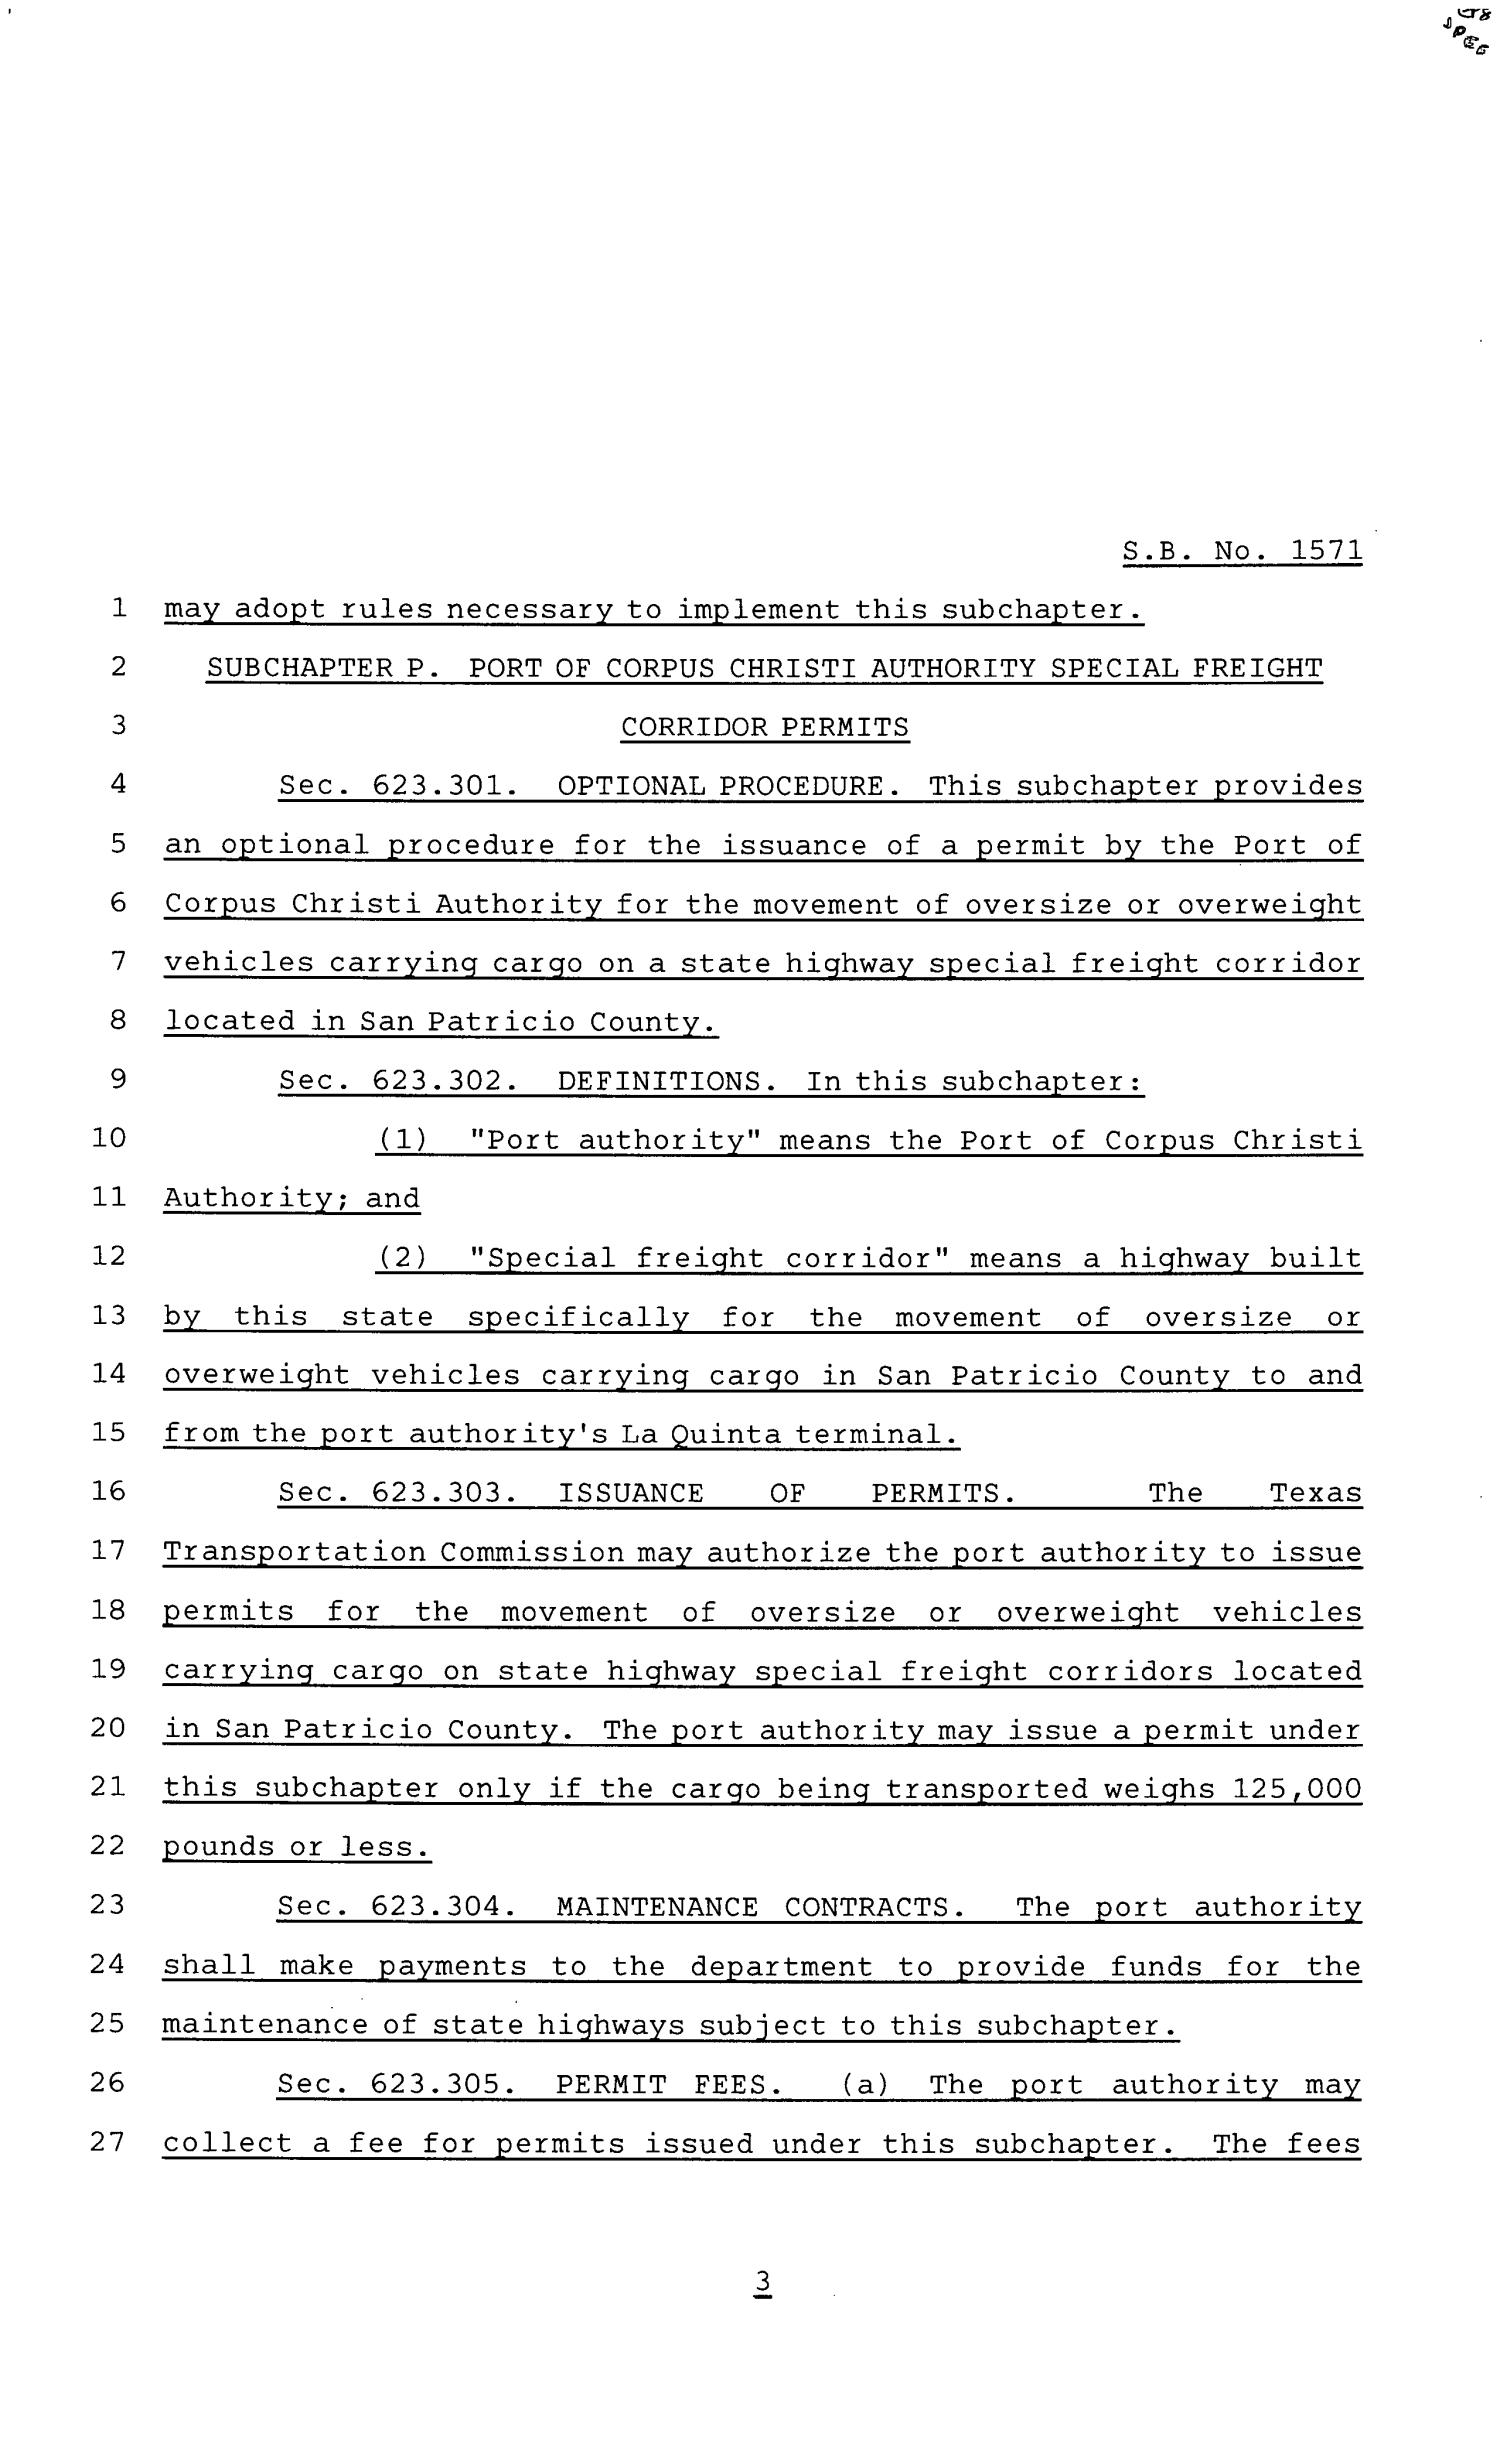 81st Texas Legislature, Senate Bill 1571, Chapter 812
                                                
                                                    [Sequence #]: 3 of 6
                                                